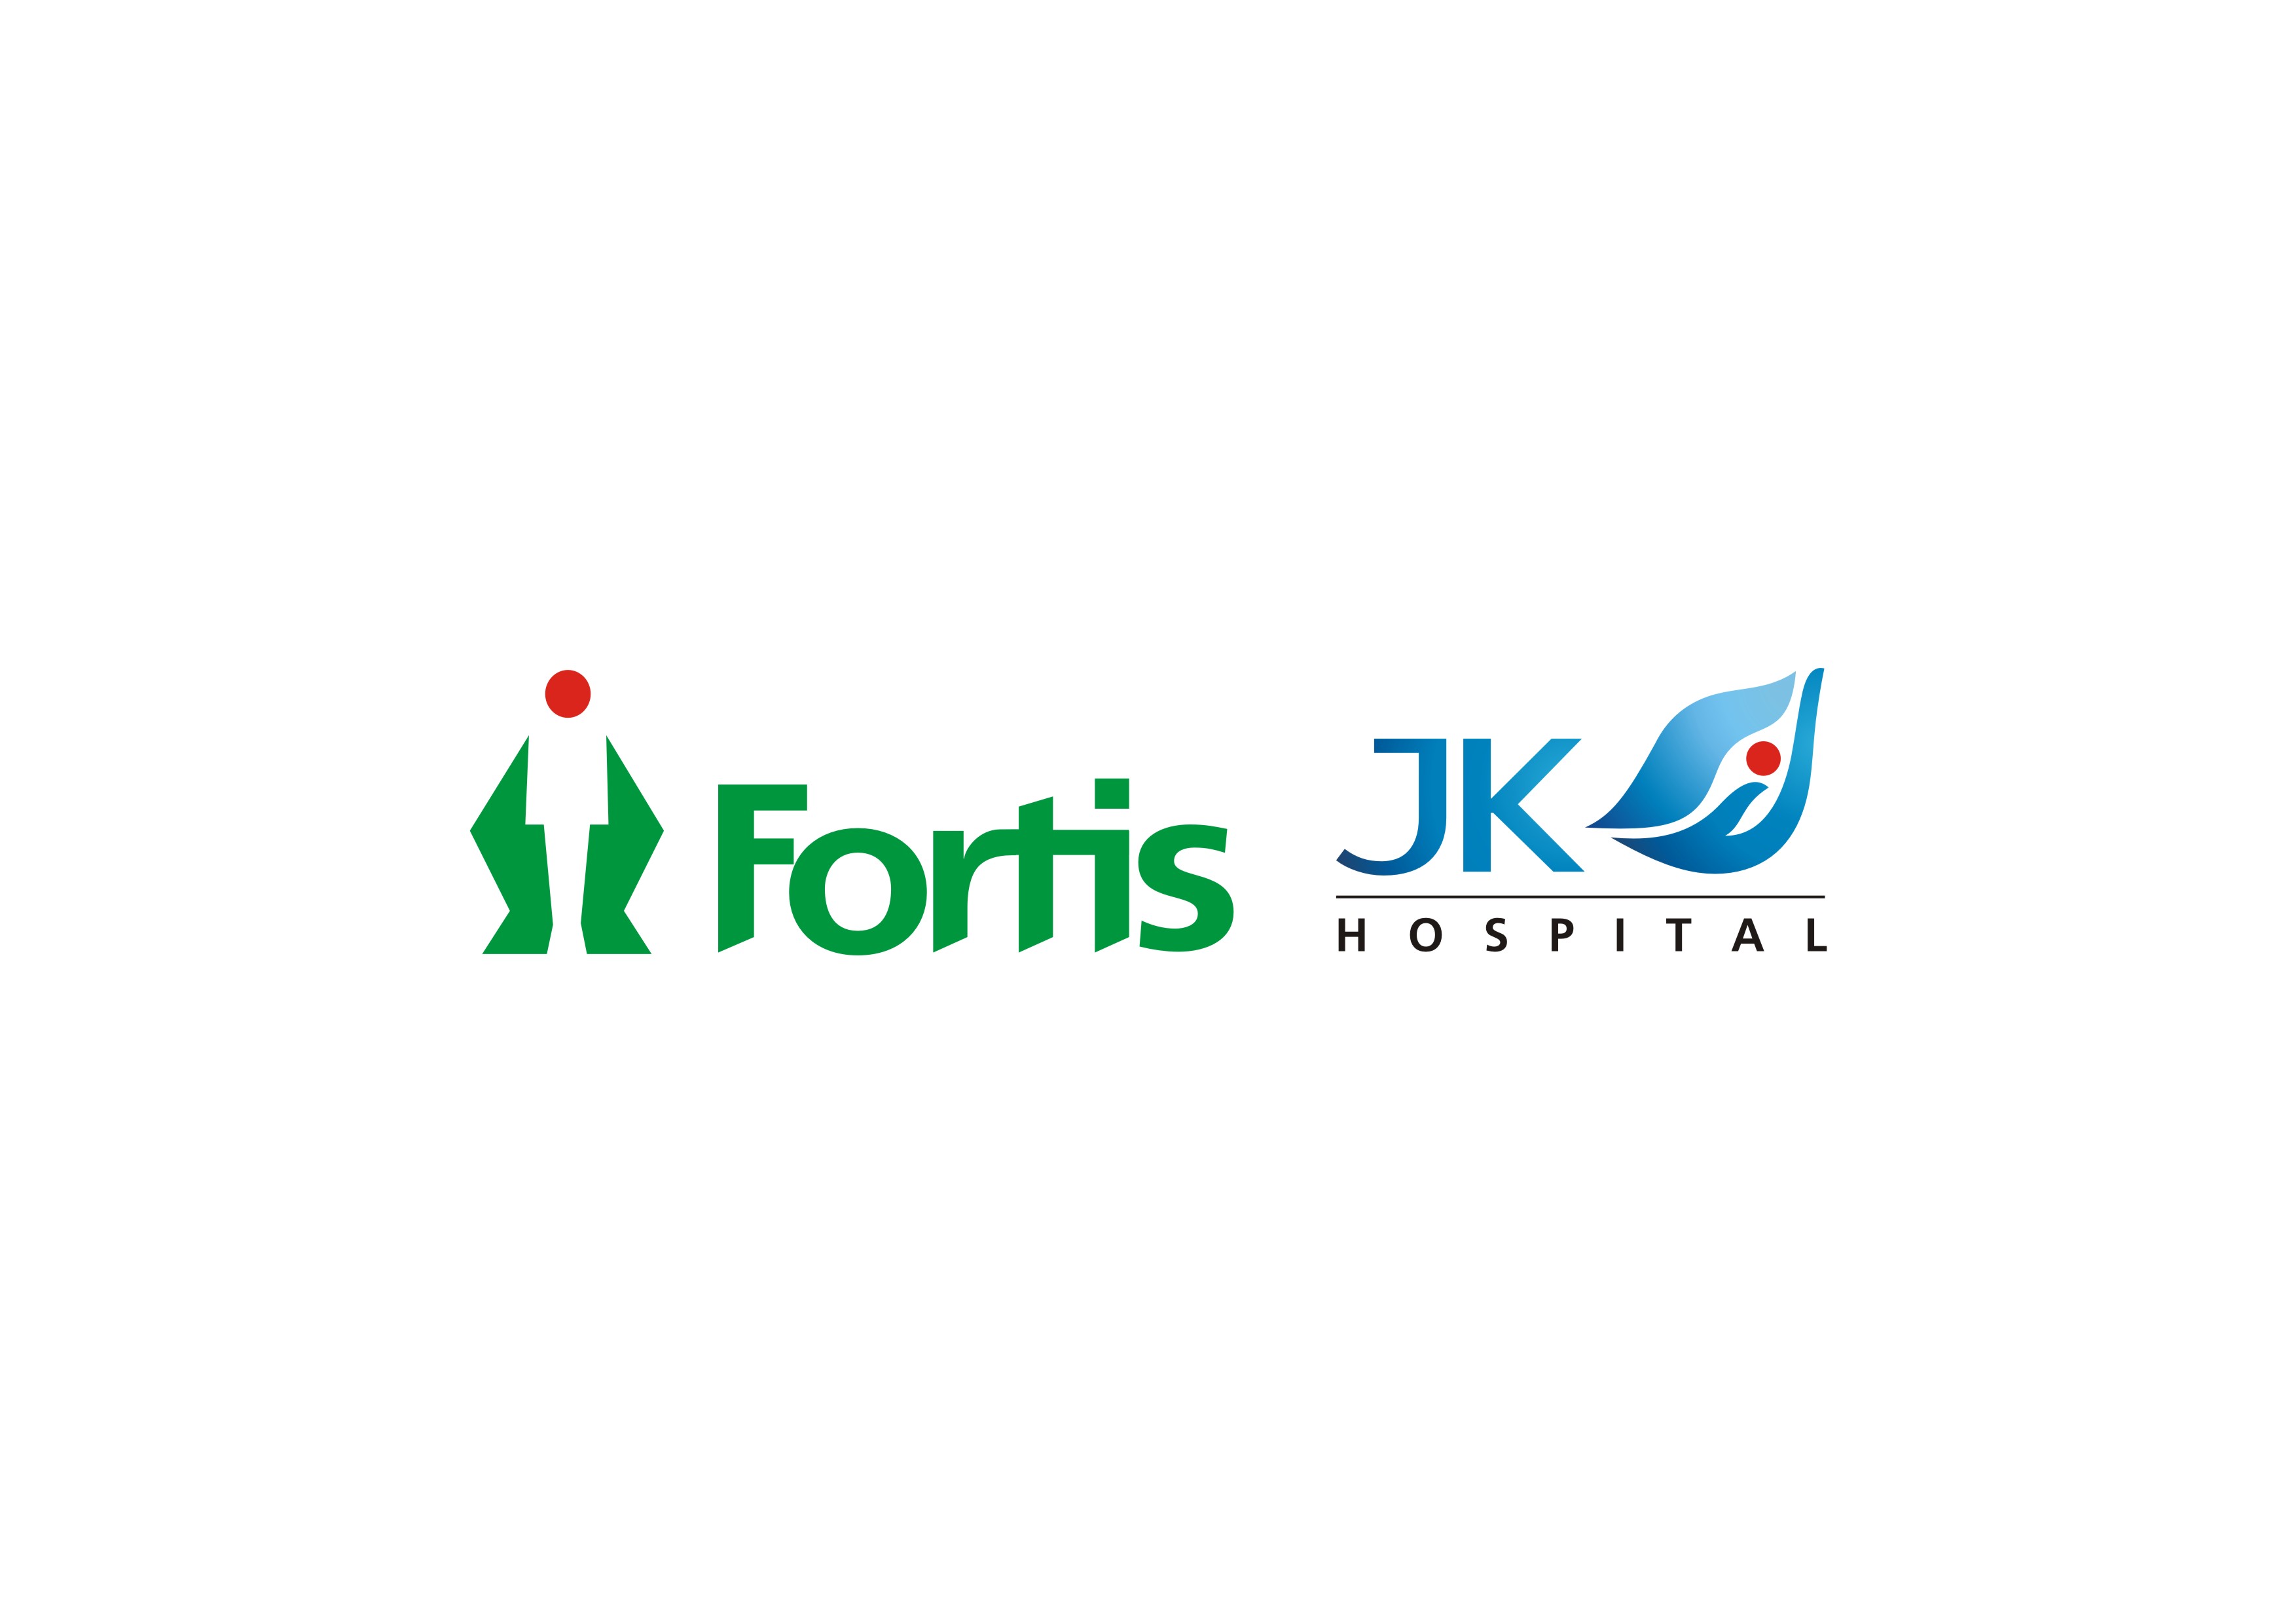 fortis-jk-logo